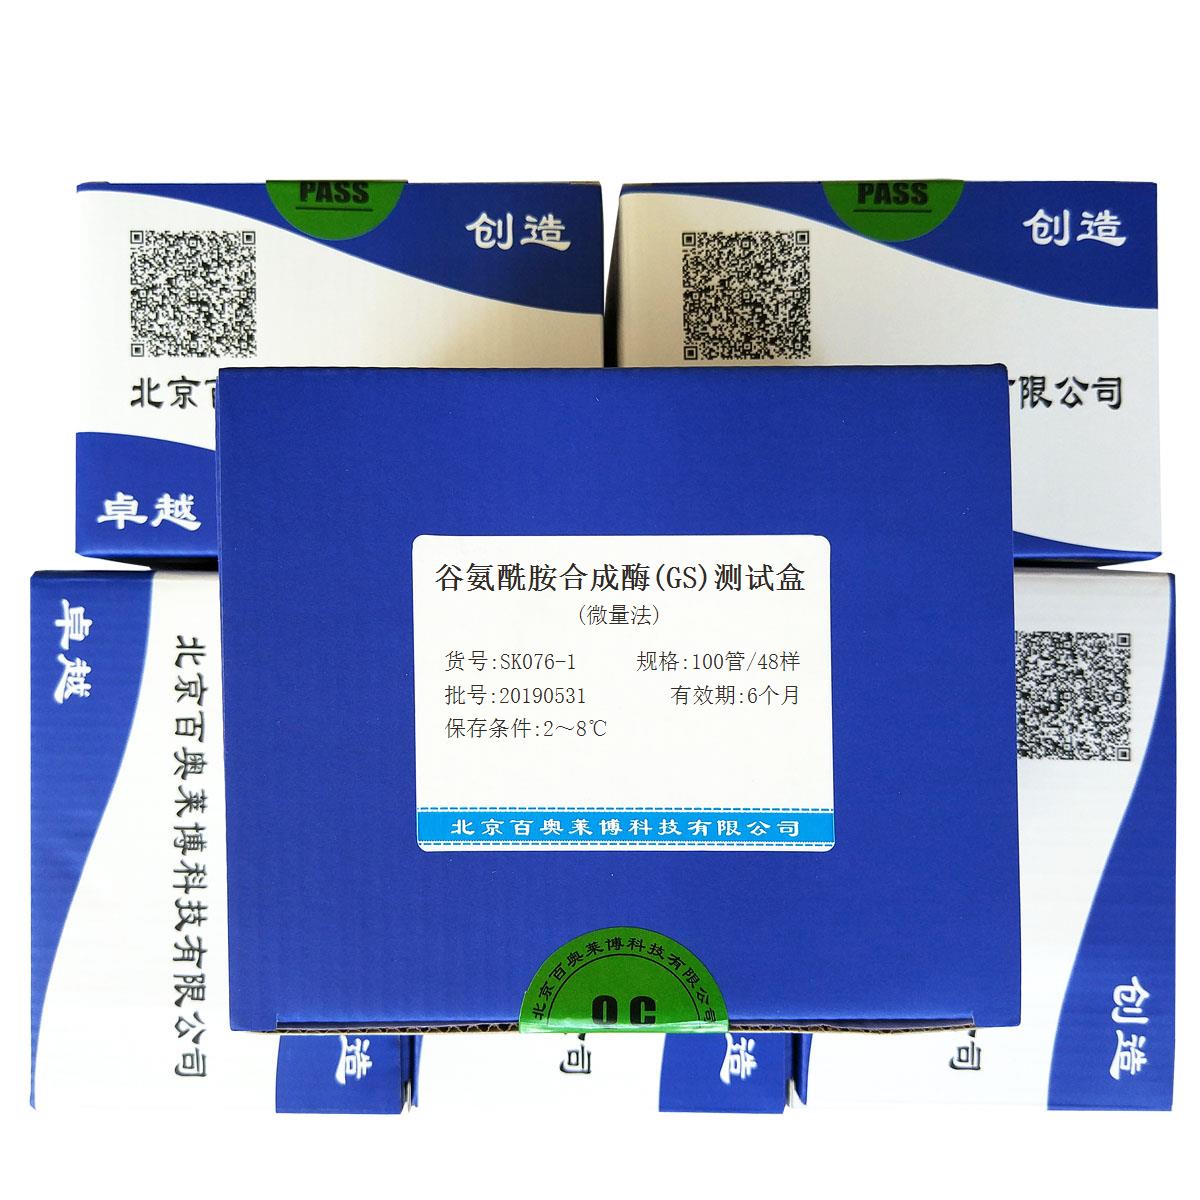 谷氨酰胺合成酶(GS)测试盒(微量法)北京价格